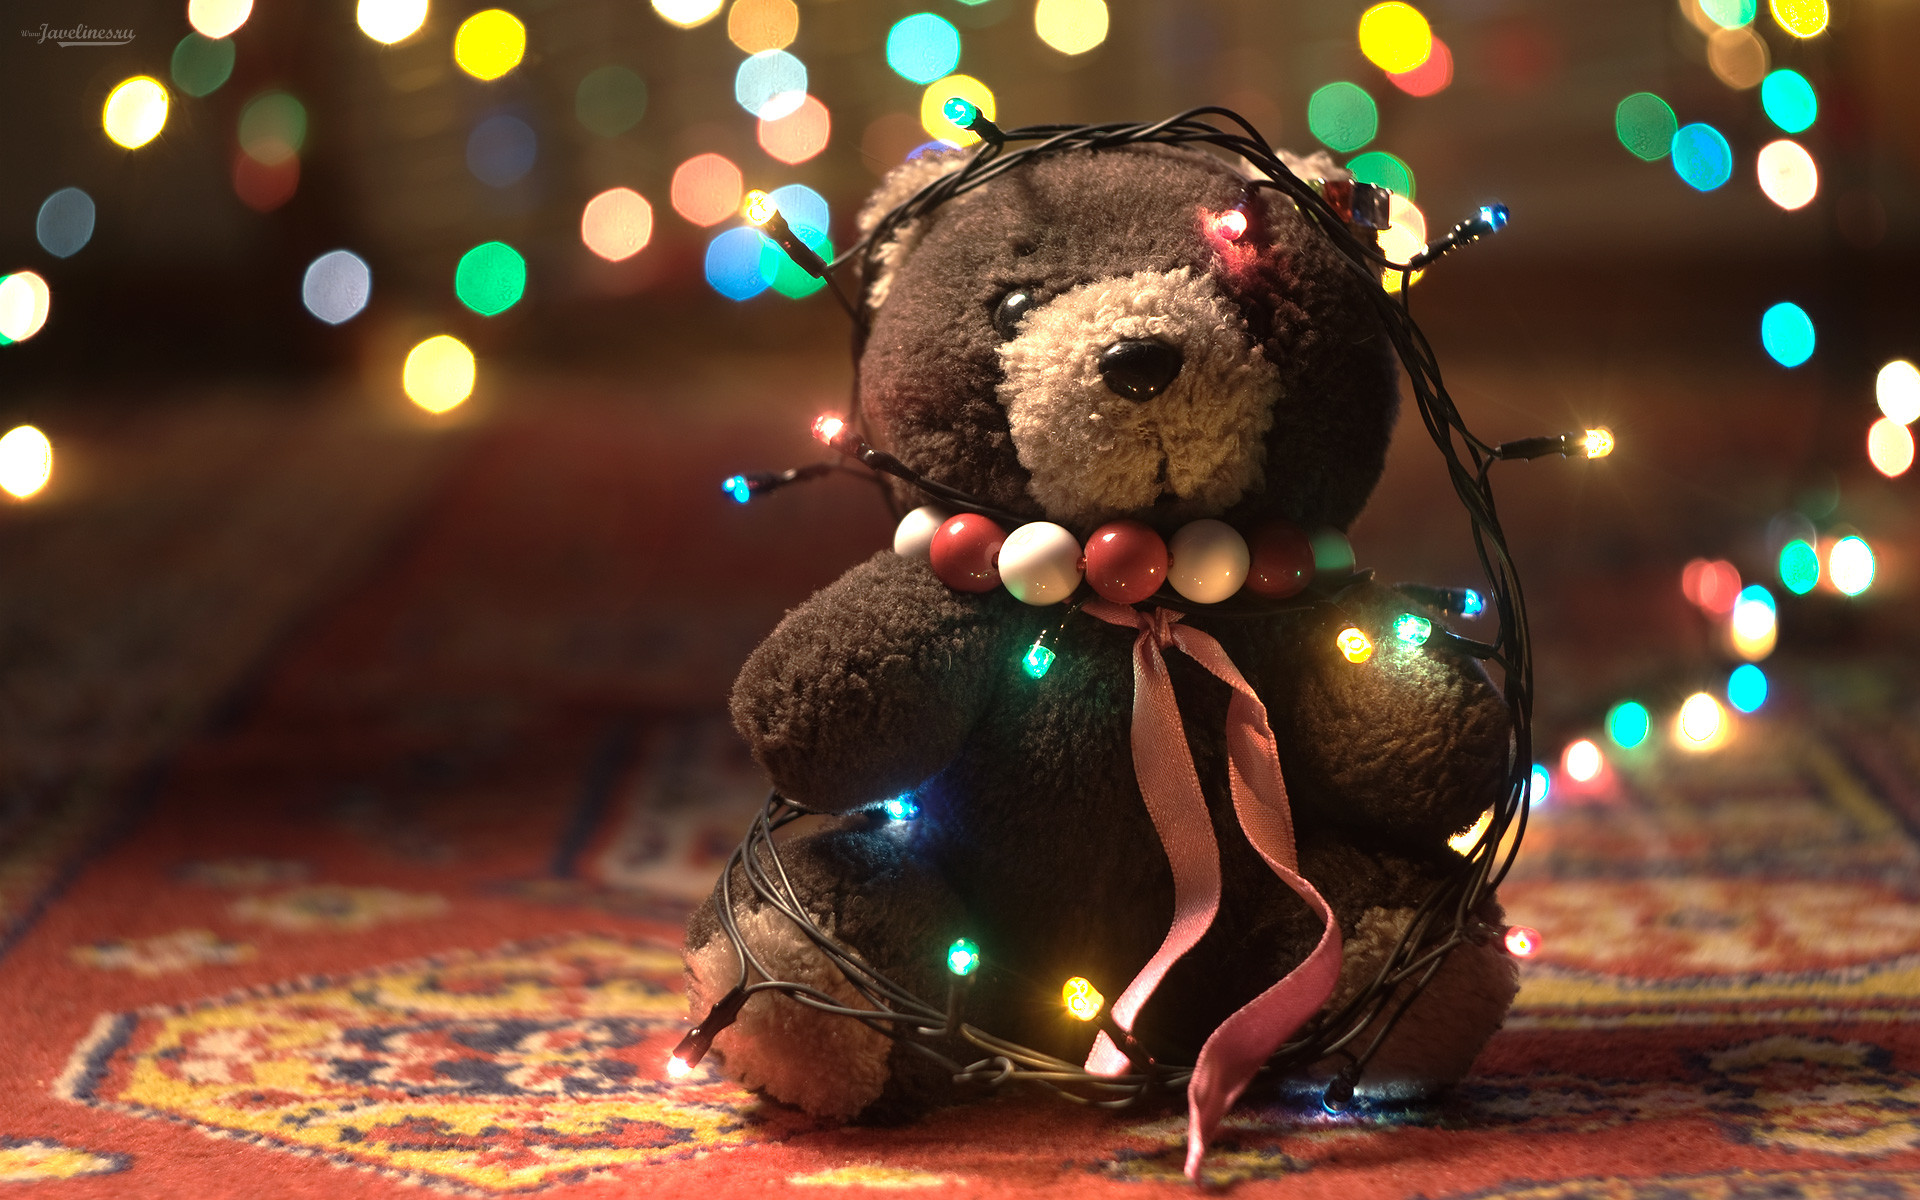 Adorable Teddy Bear 1920x1200